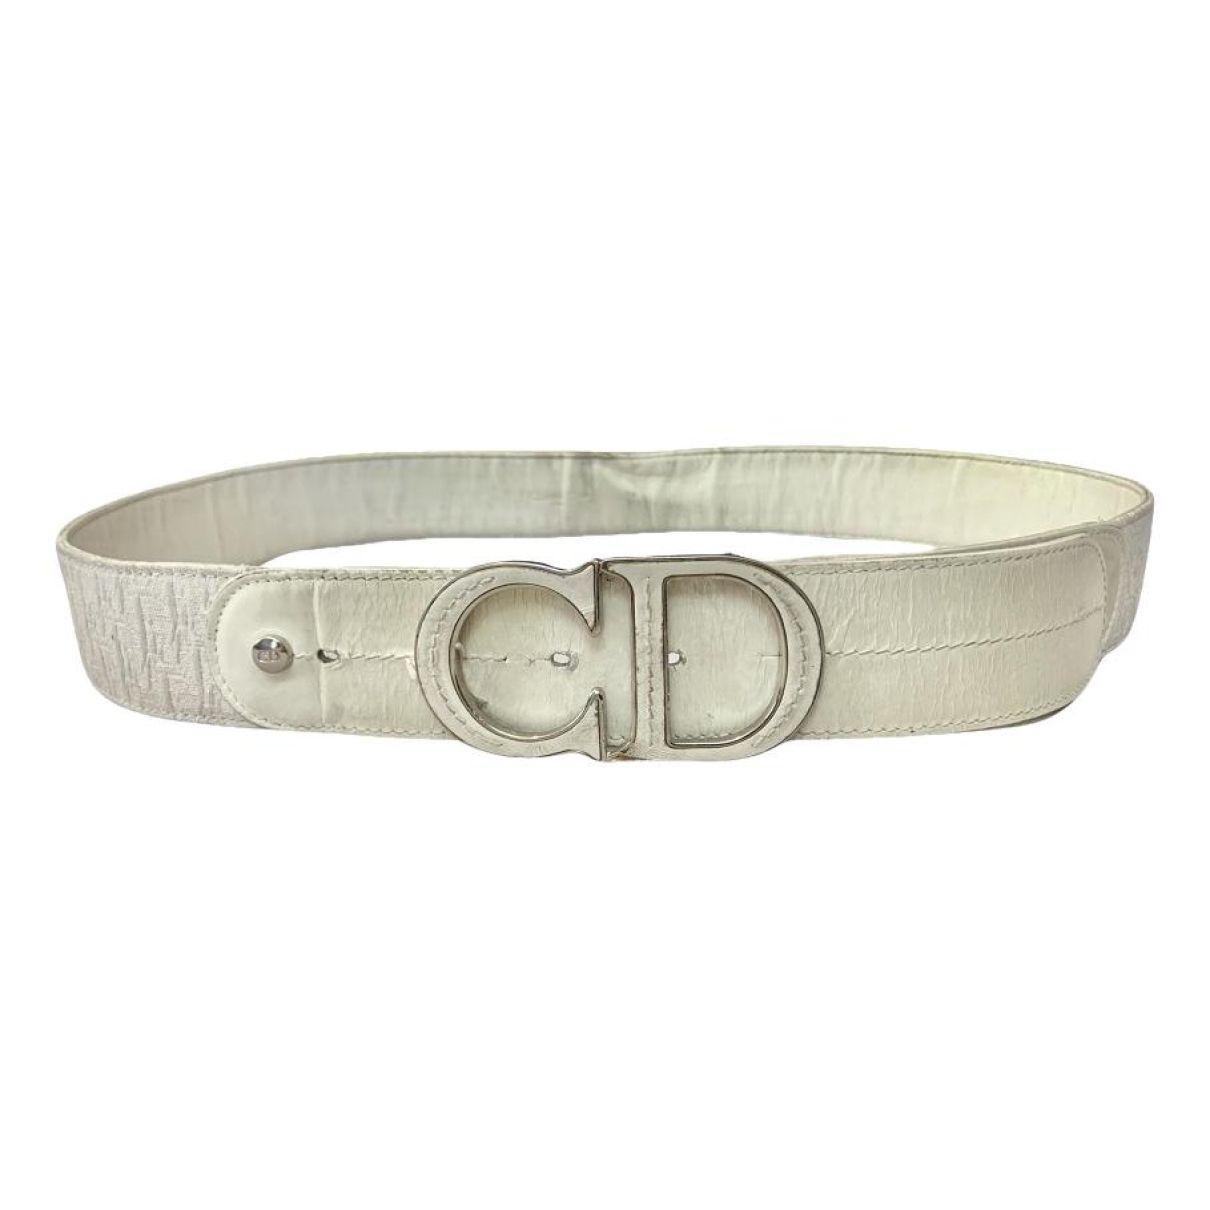 Cloth belt by DIOR